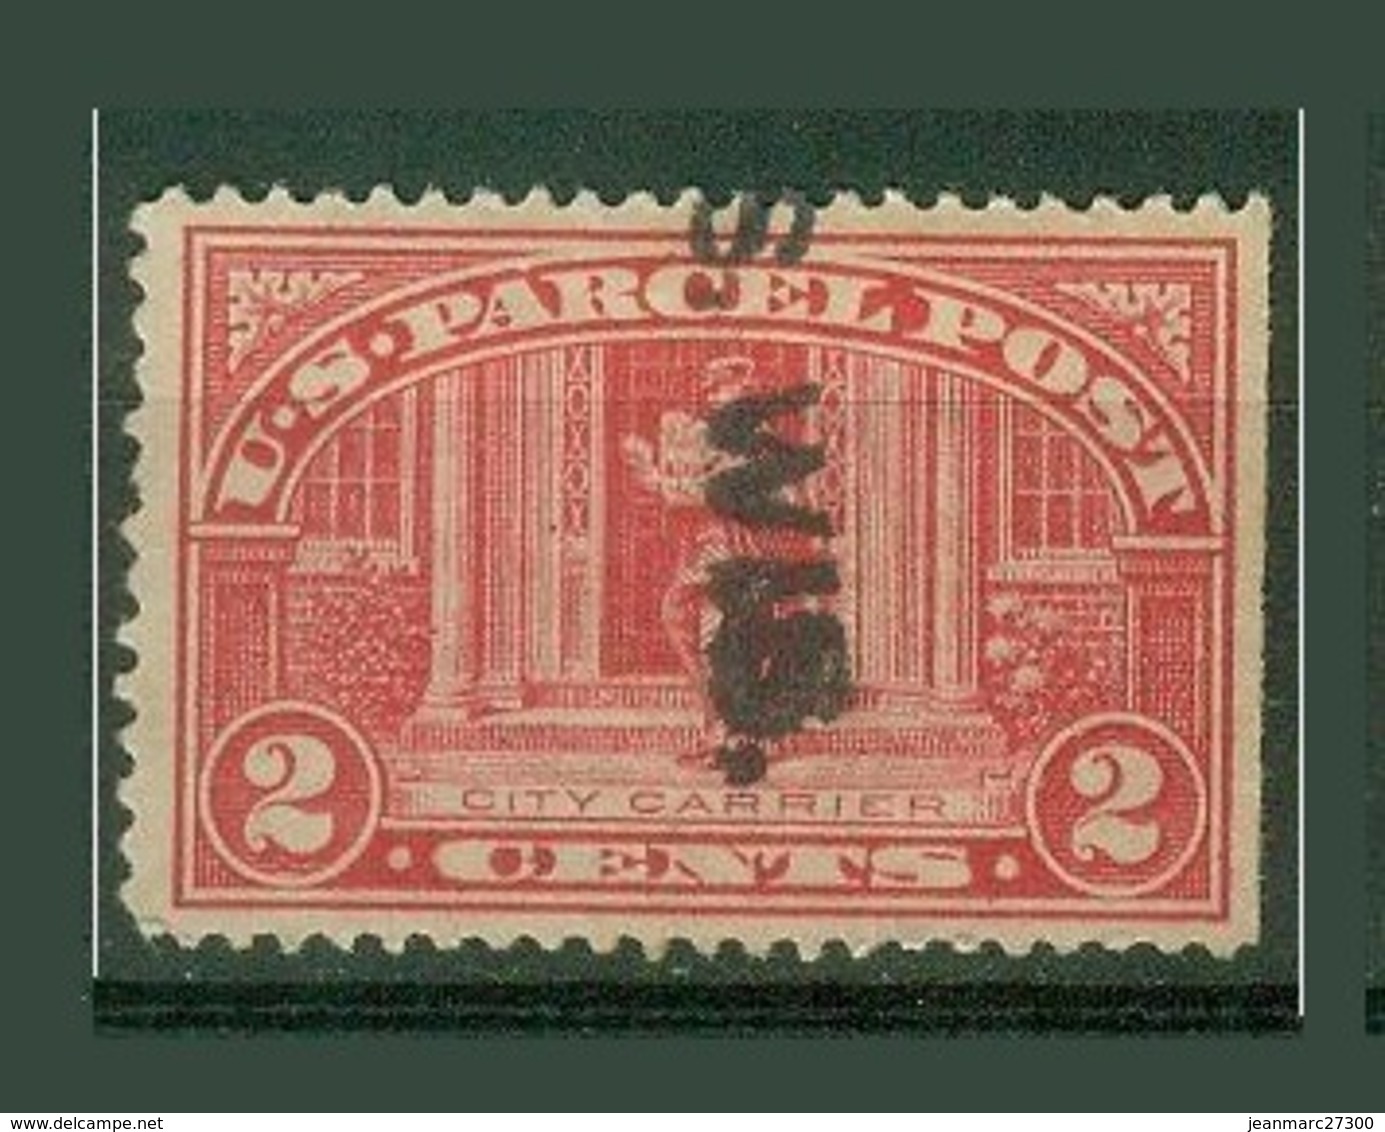 Amériques - Etats Unis Colis Postaux YT N° 2 Oblitérés - Reisgoedzegels